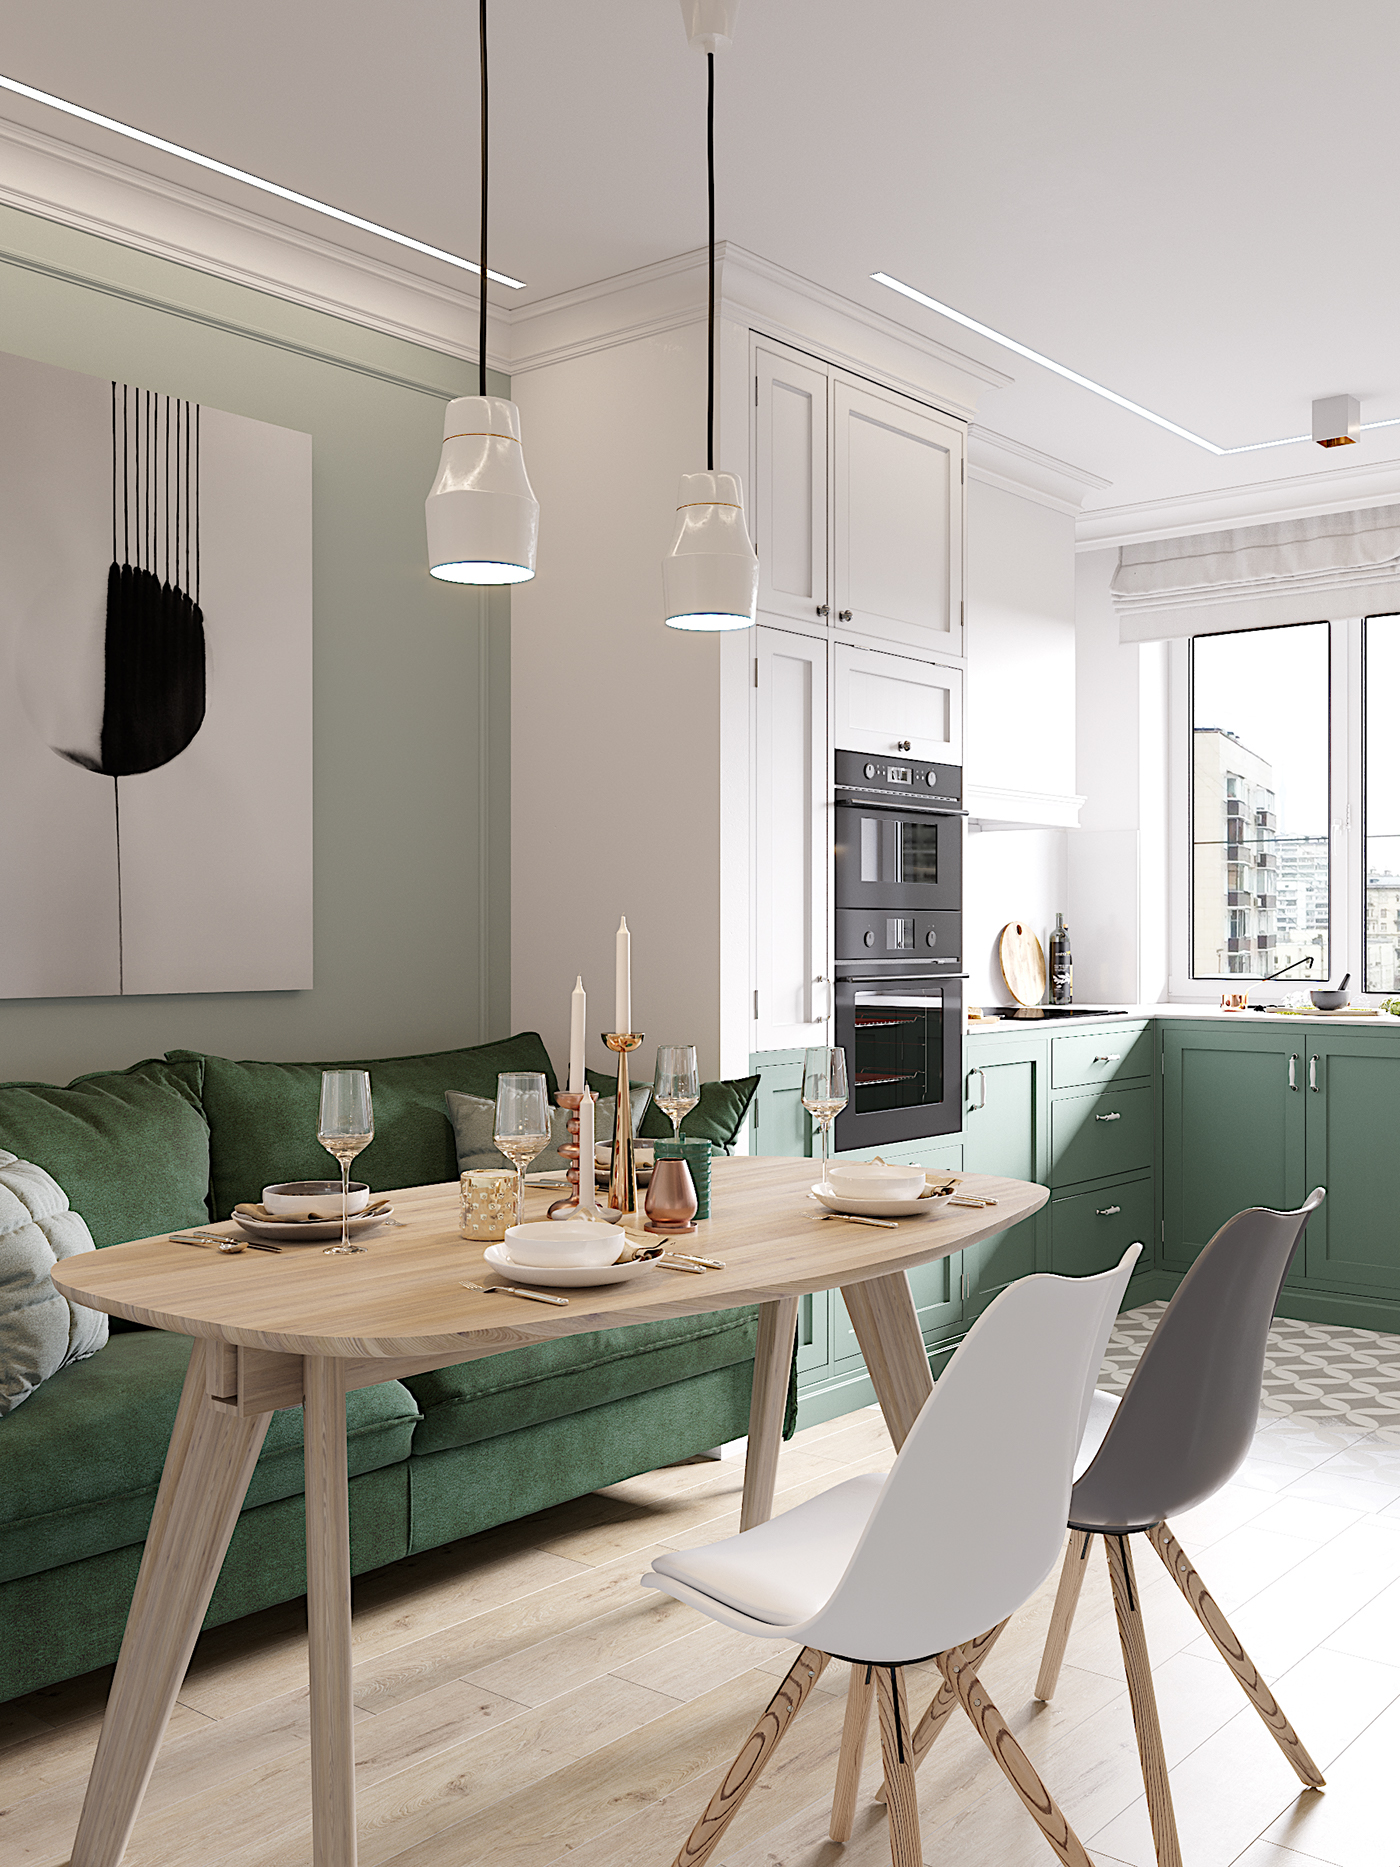 cartelledesign Interior design pink green LOFT Scandinavian modern